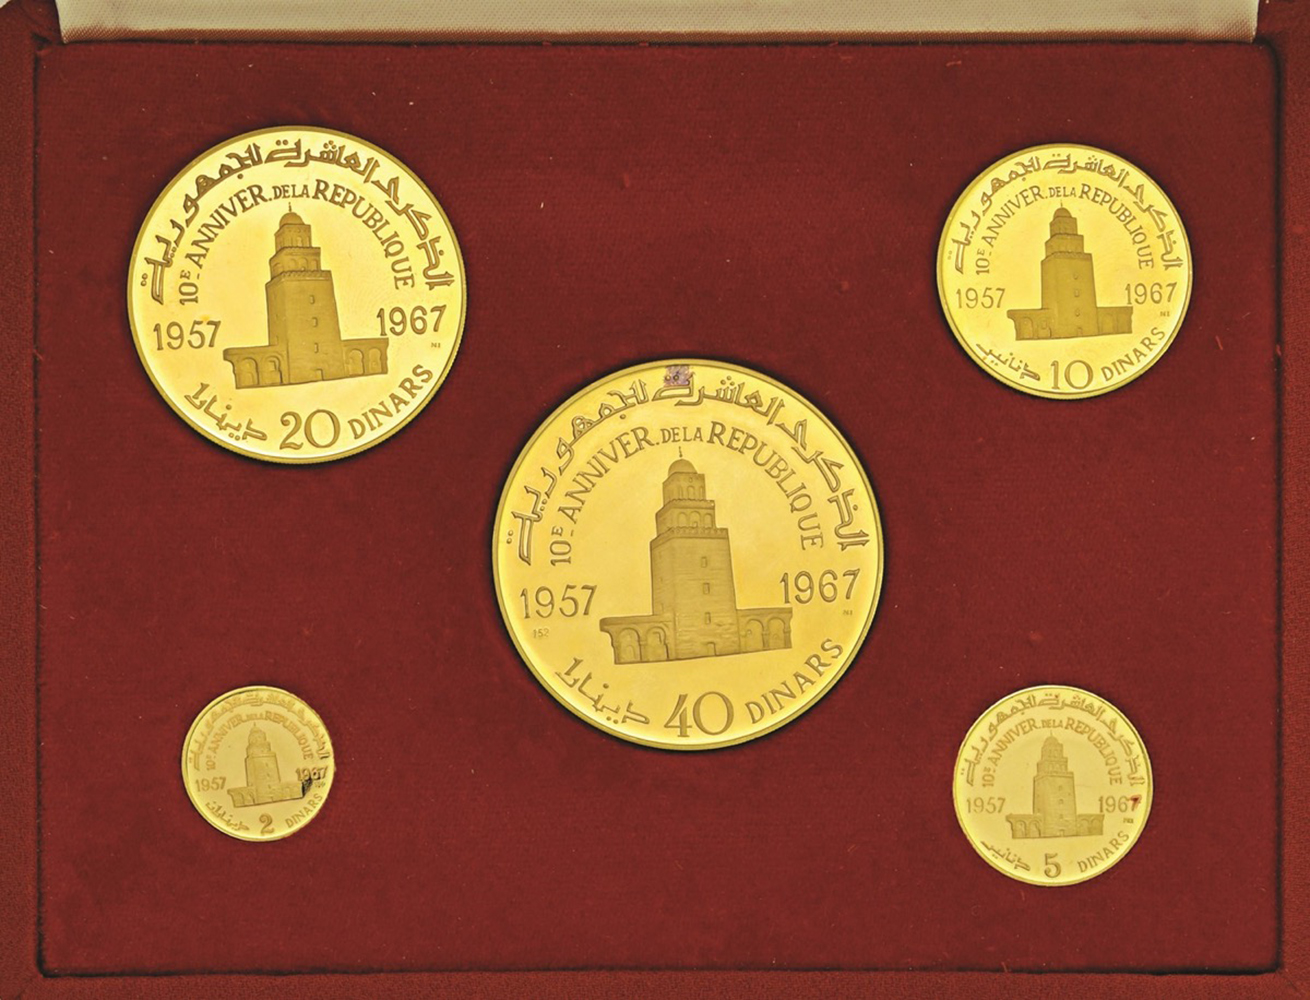 TUNISIA. Repubblica - Serie 1967 di 5 valori in oro (40, 20, 10, 5 e 2 dinars). [...] - Image 2 of 2